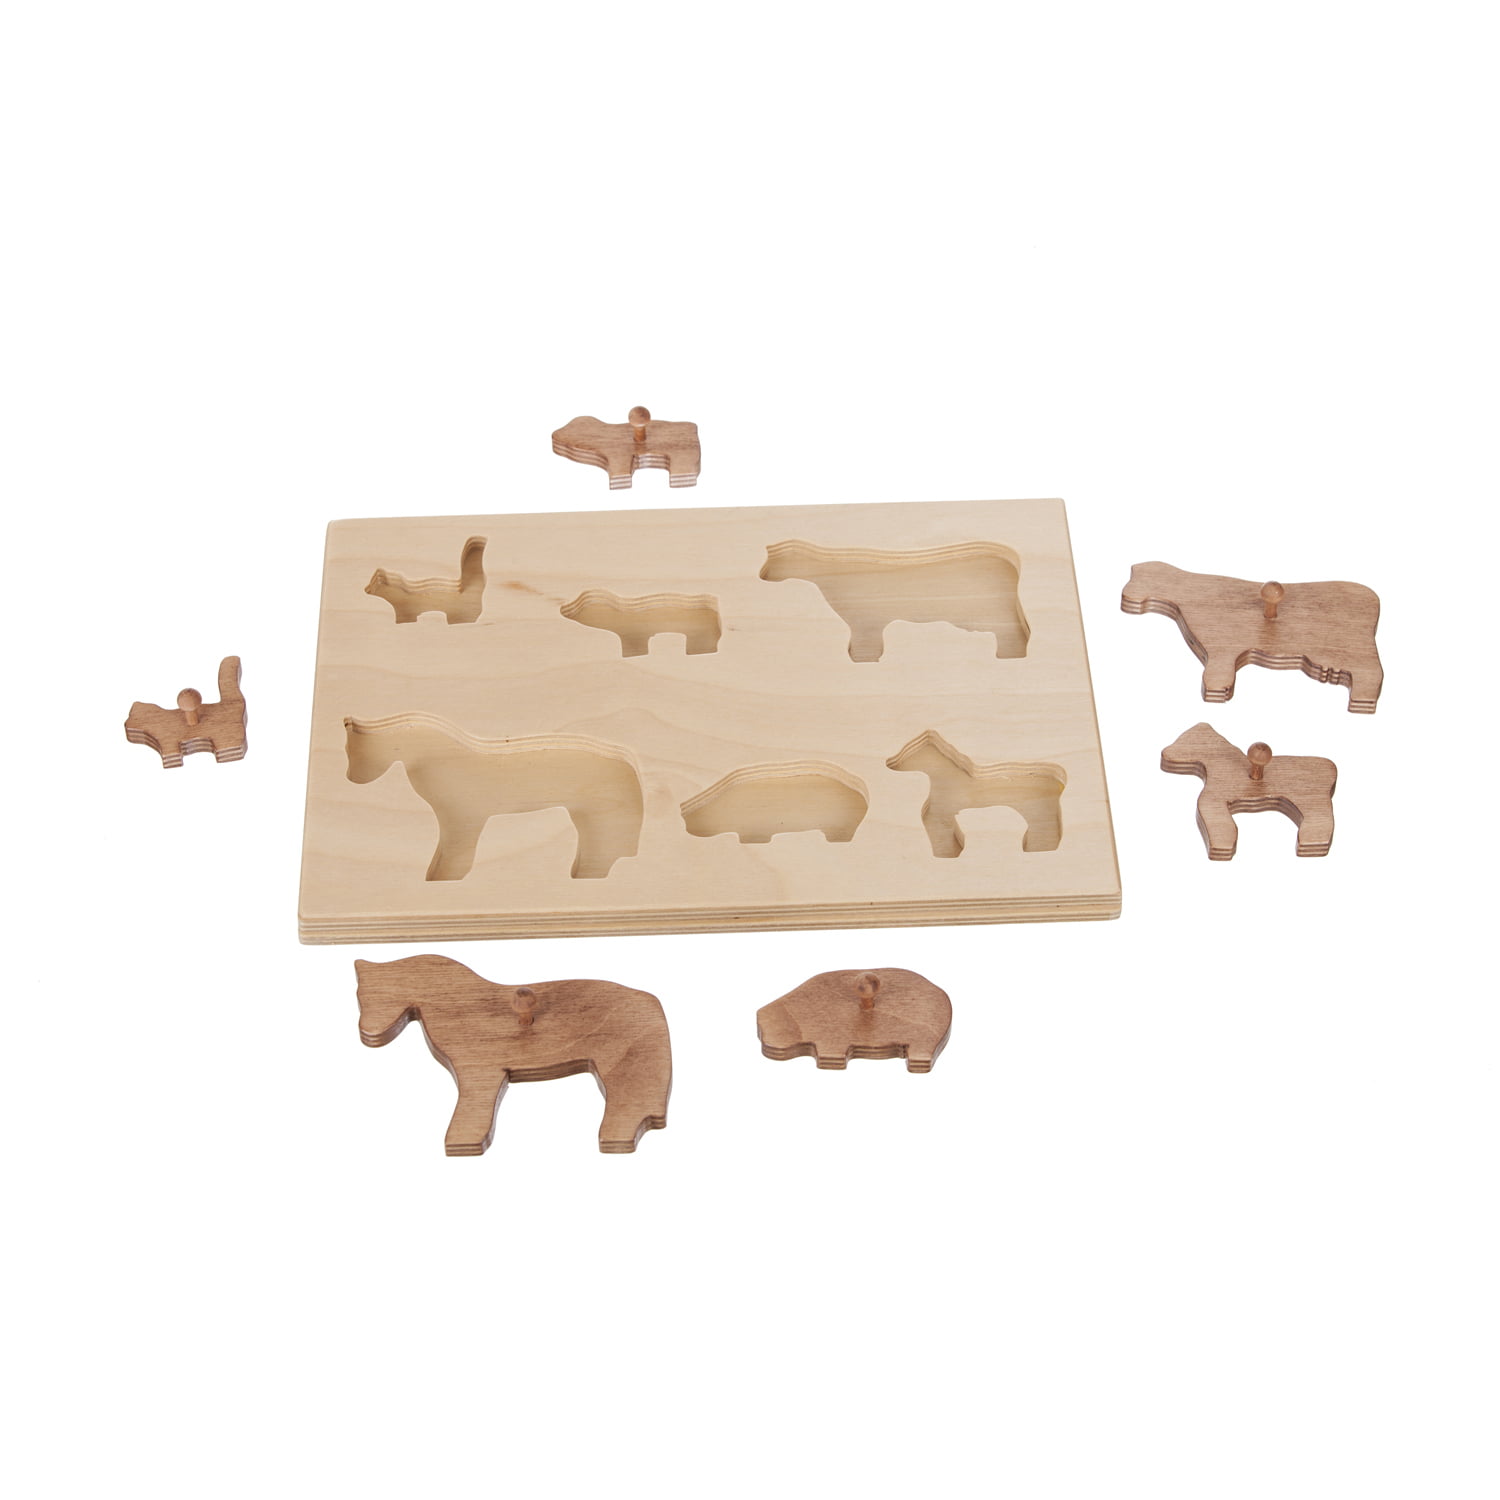 Children’s Wooden Farm Animal Puzzle Board